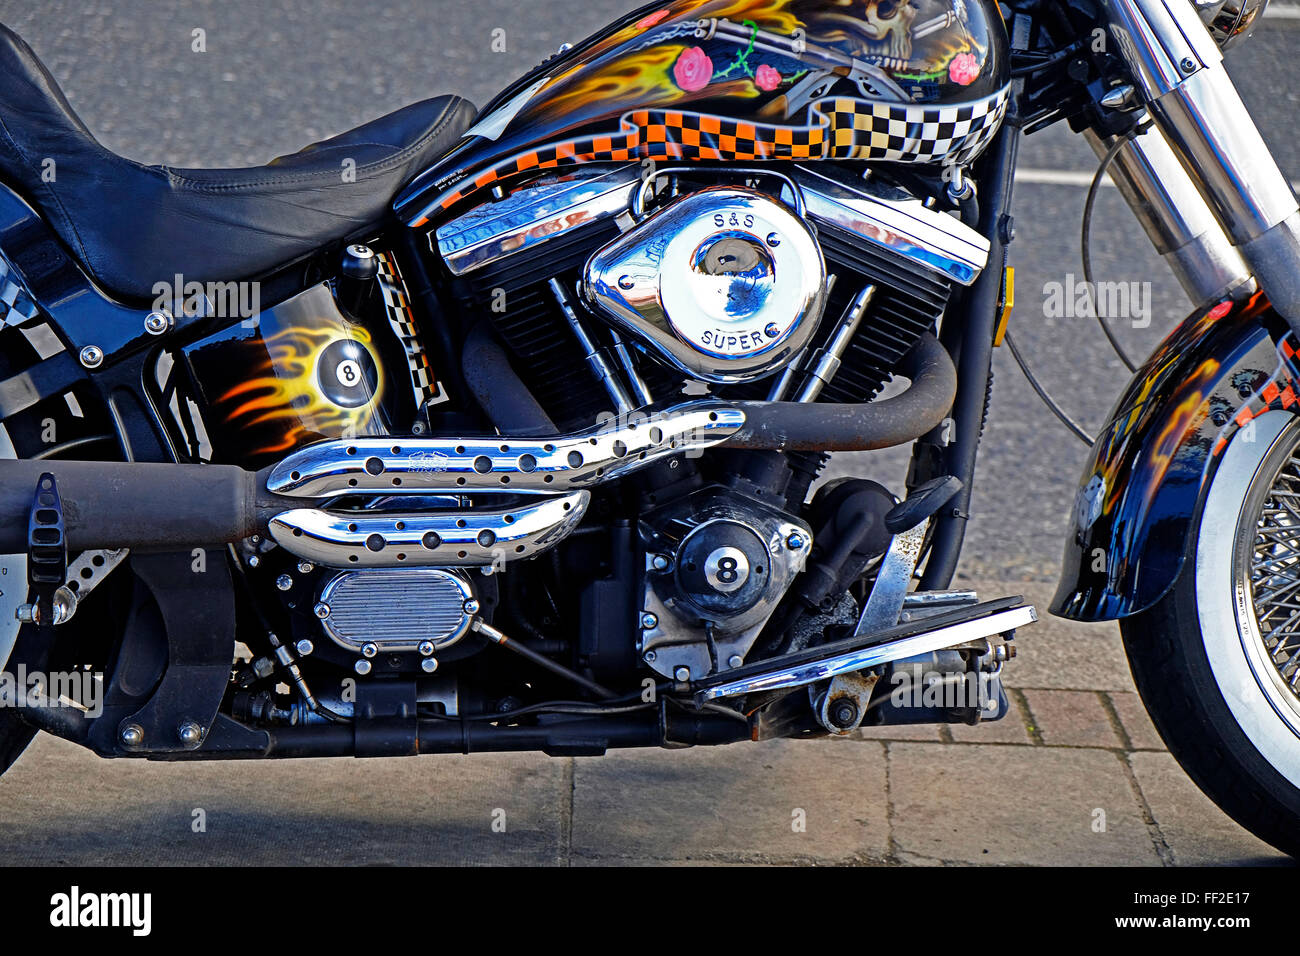 Harley Davidson motorcycle engine close up Dublin Ireland Stock Photo